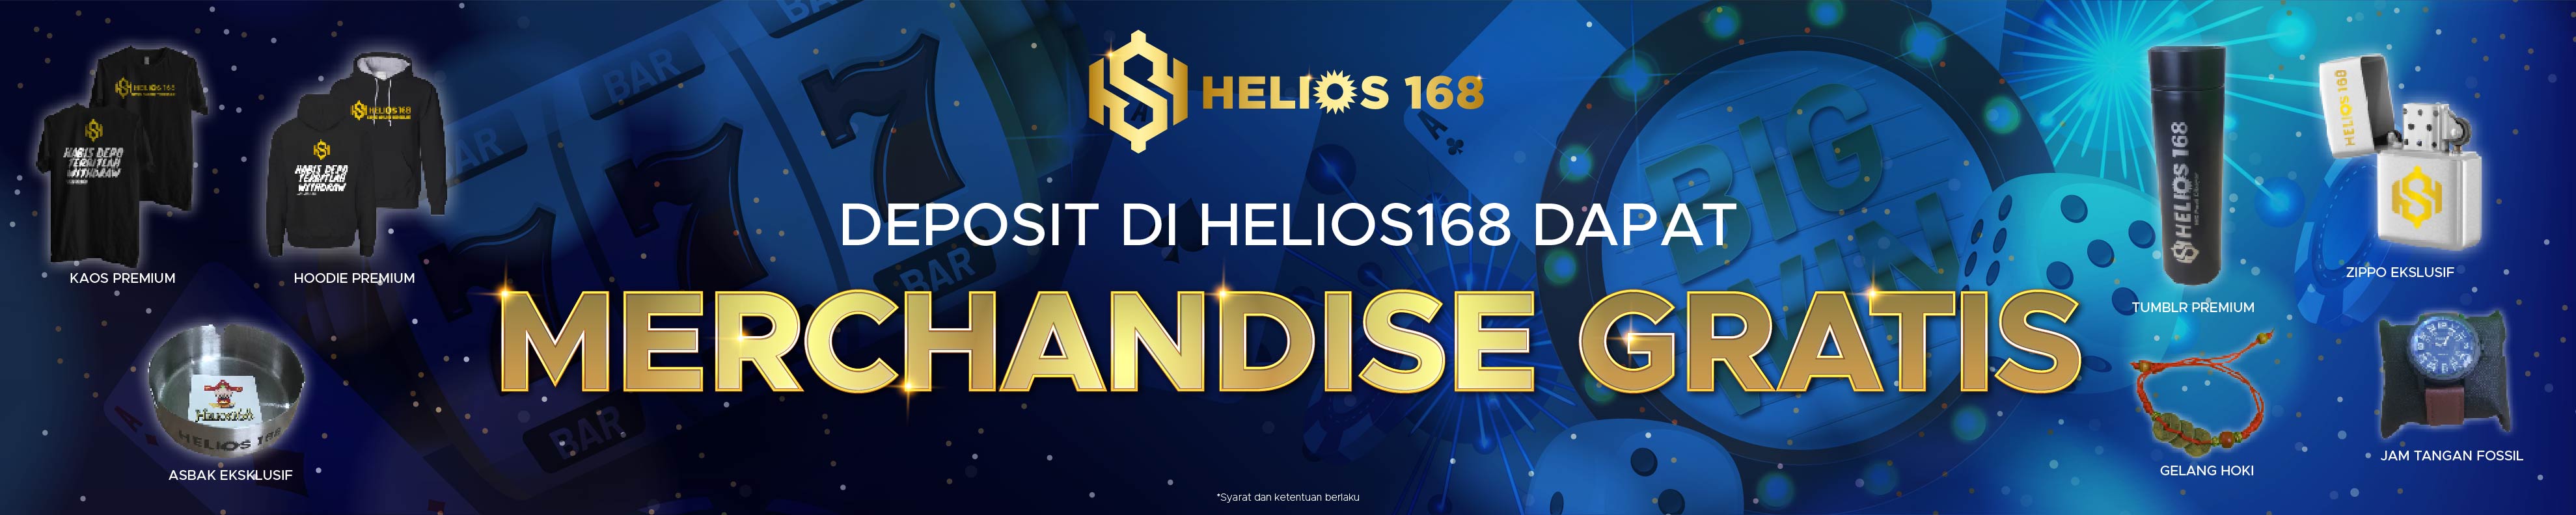 helios168